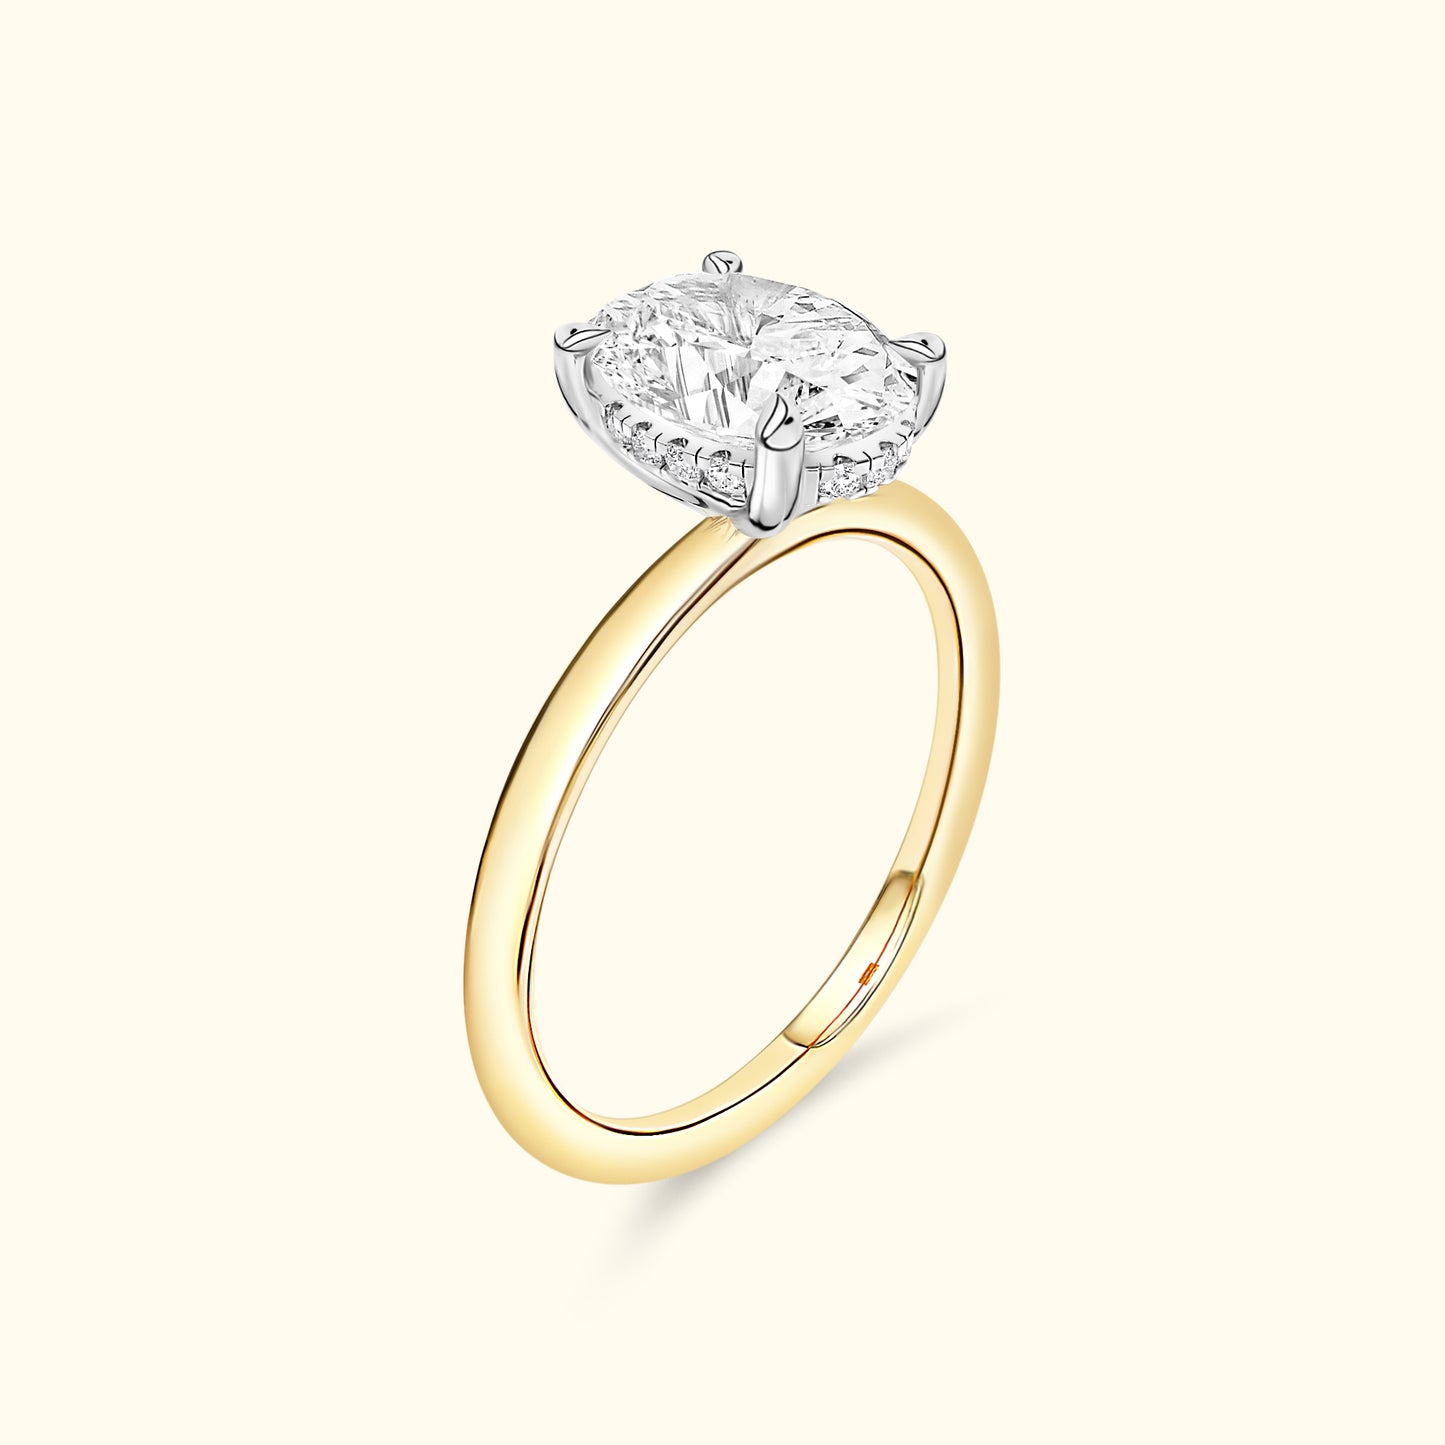 'Jess' Ring with 3.21ct Round Diamond